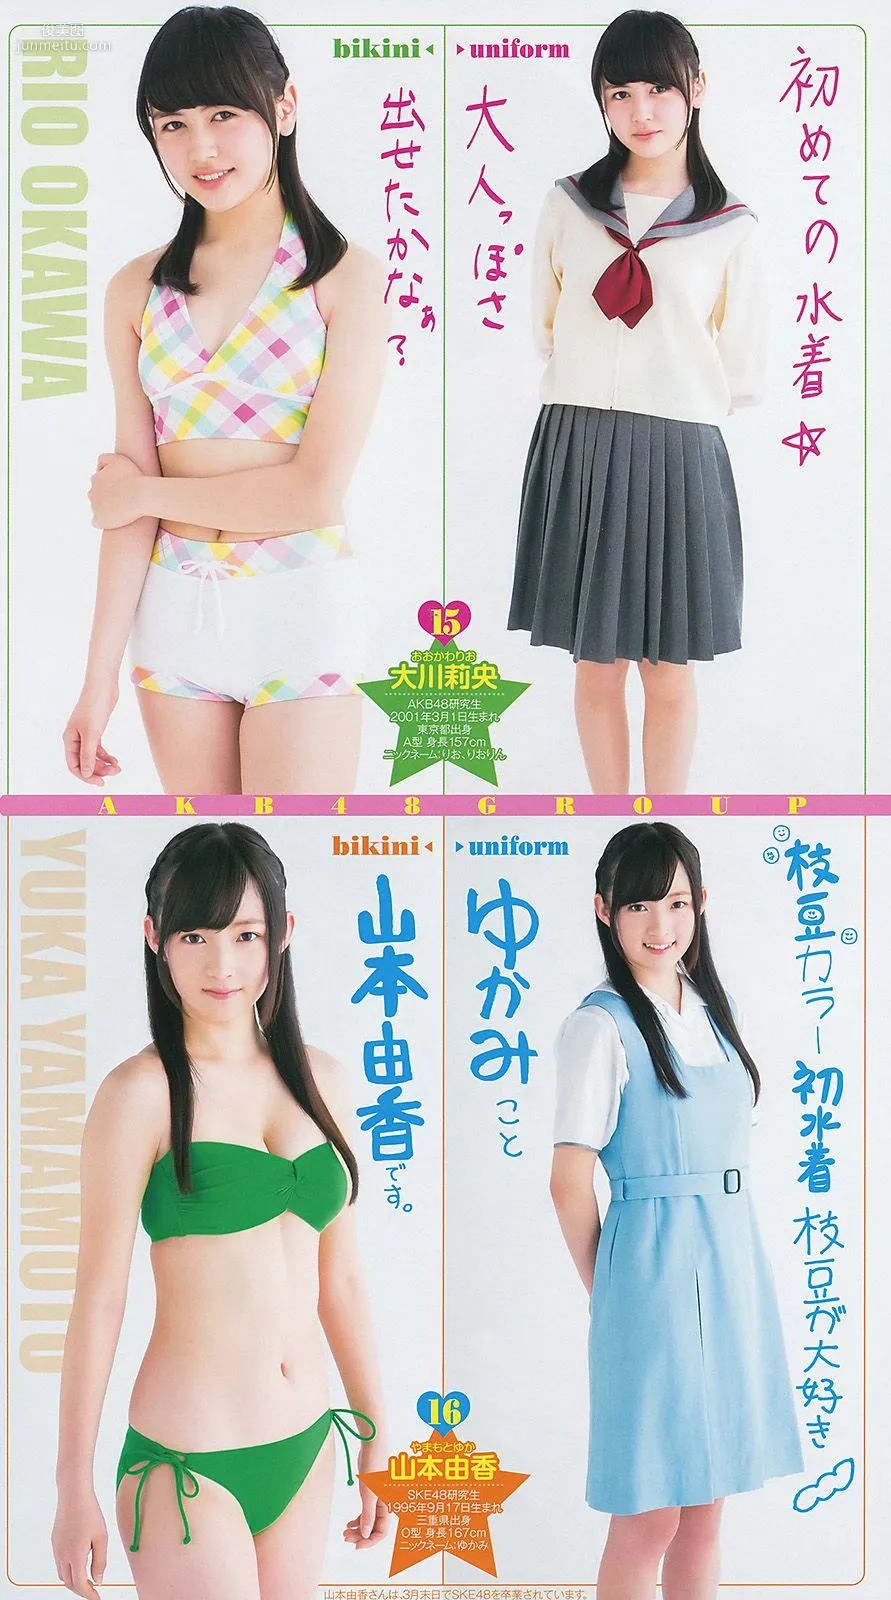 最上もが 48グループ 横山ルリカ [Weekly Young Jump] 2014年No.19 写真杂志12